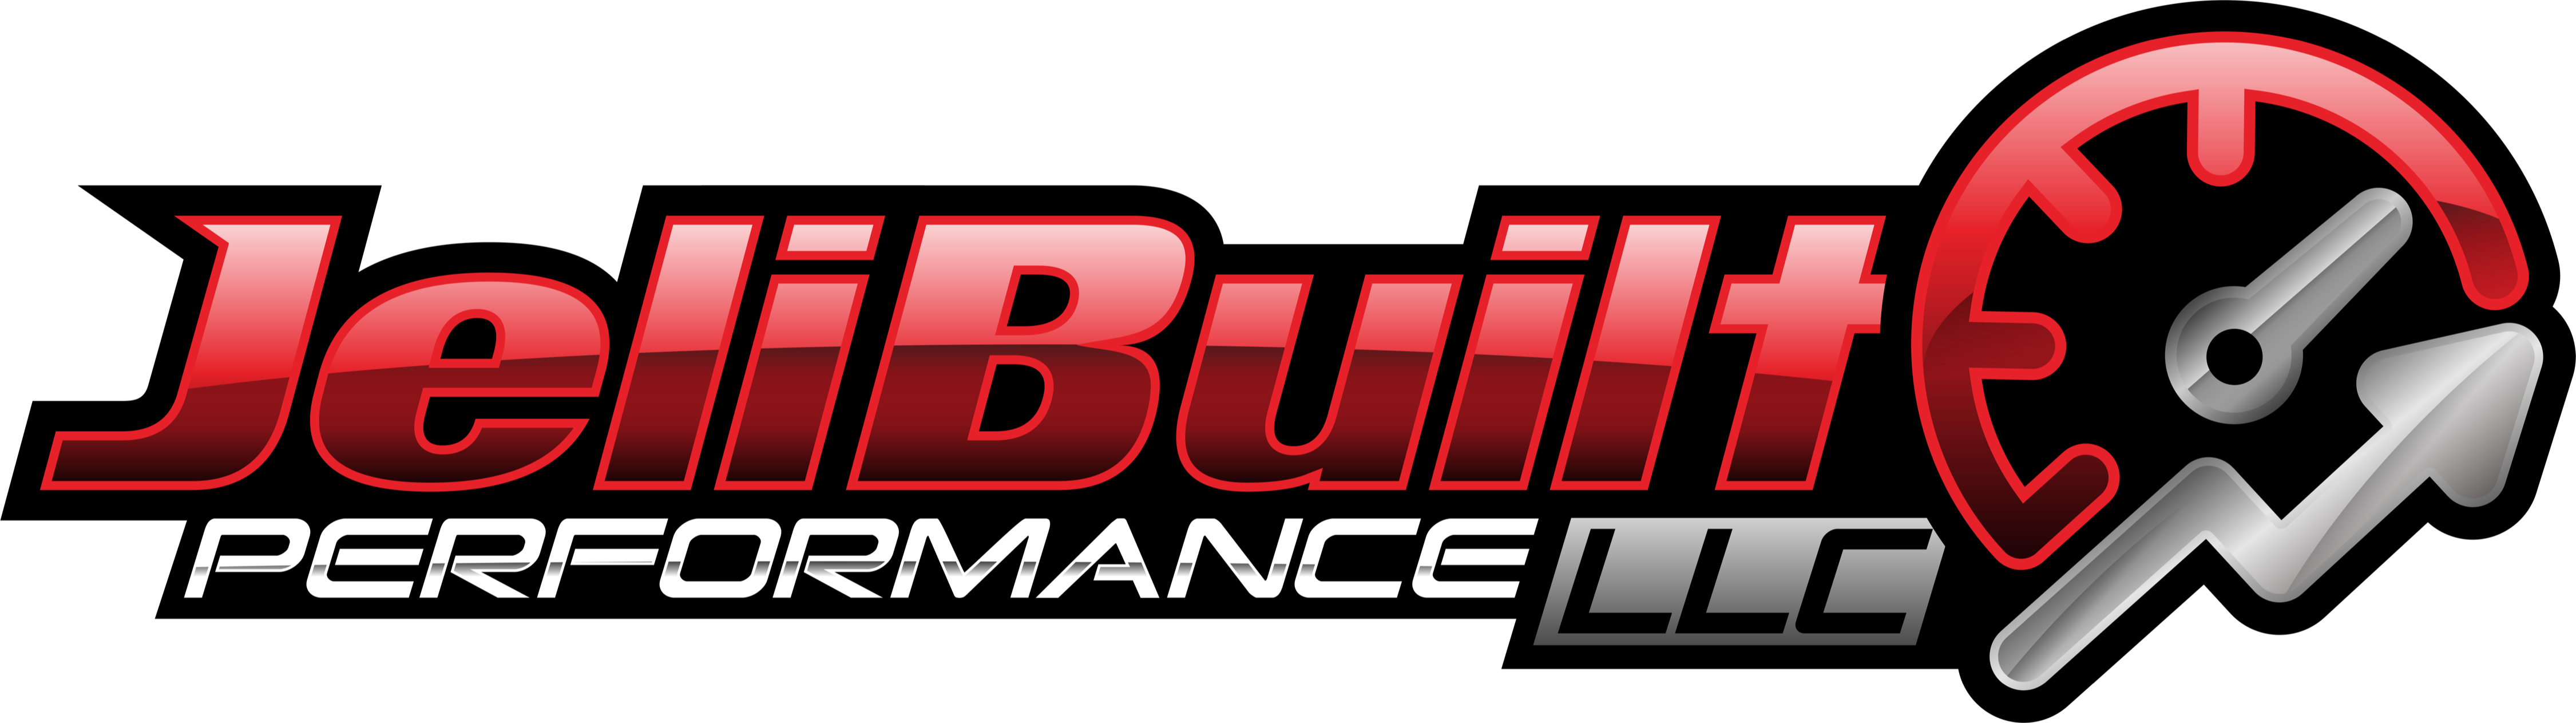 JeliBuilt Performance, LLC